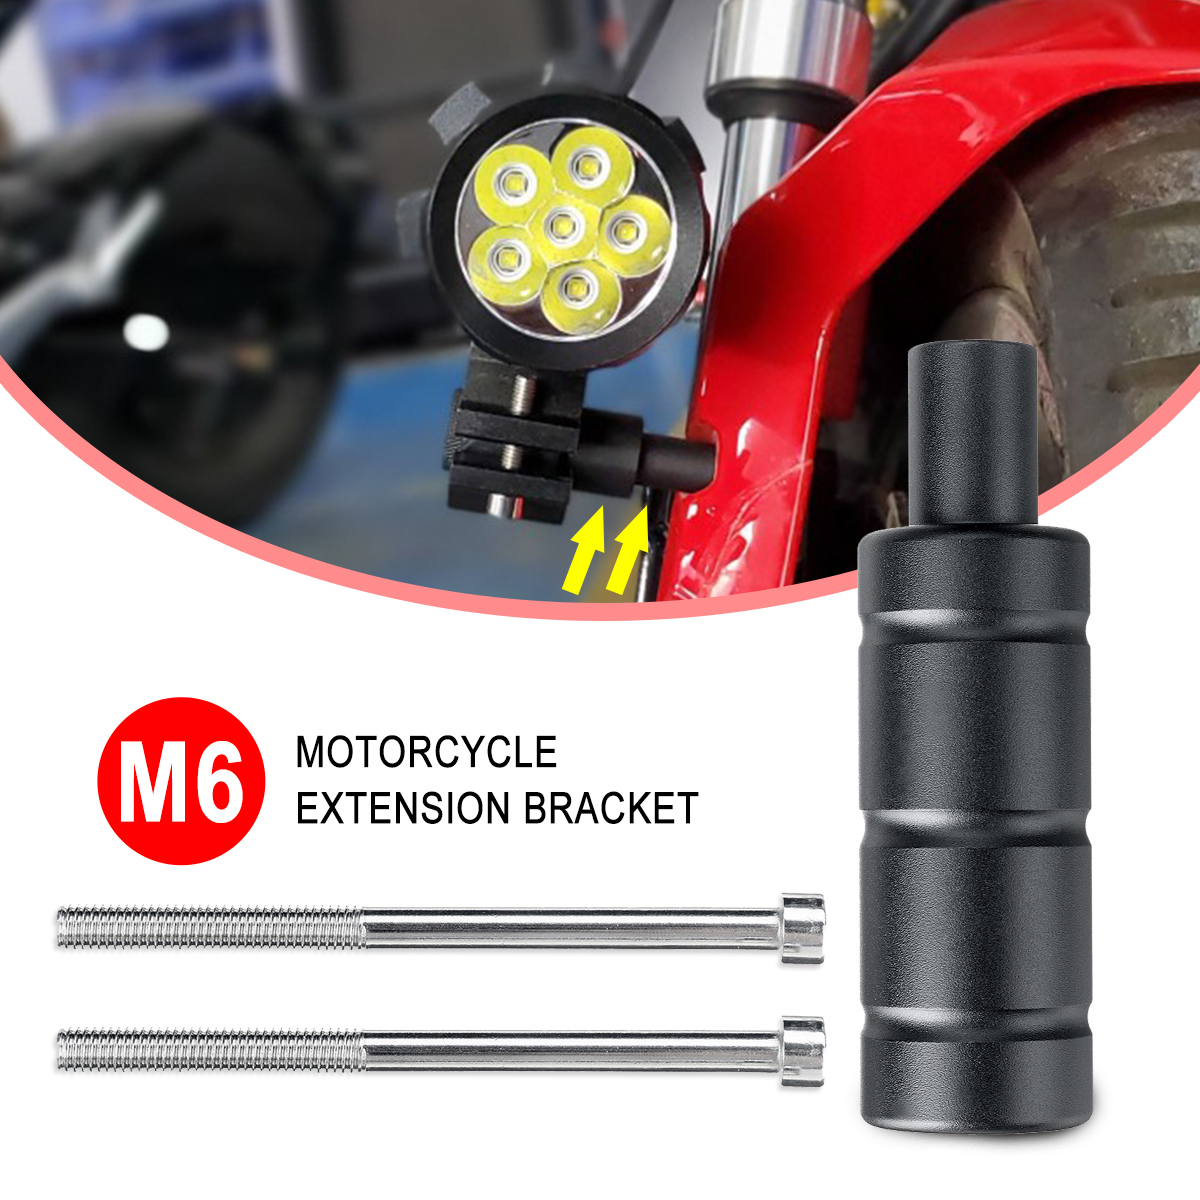 M8/M6 Motorcycle Extension Bracket Bicycle Holder Spot Bracket Mounting